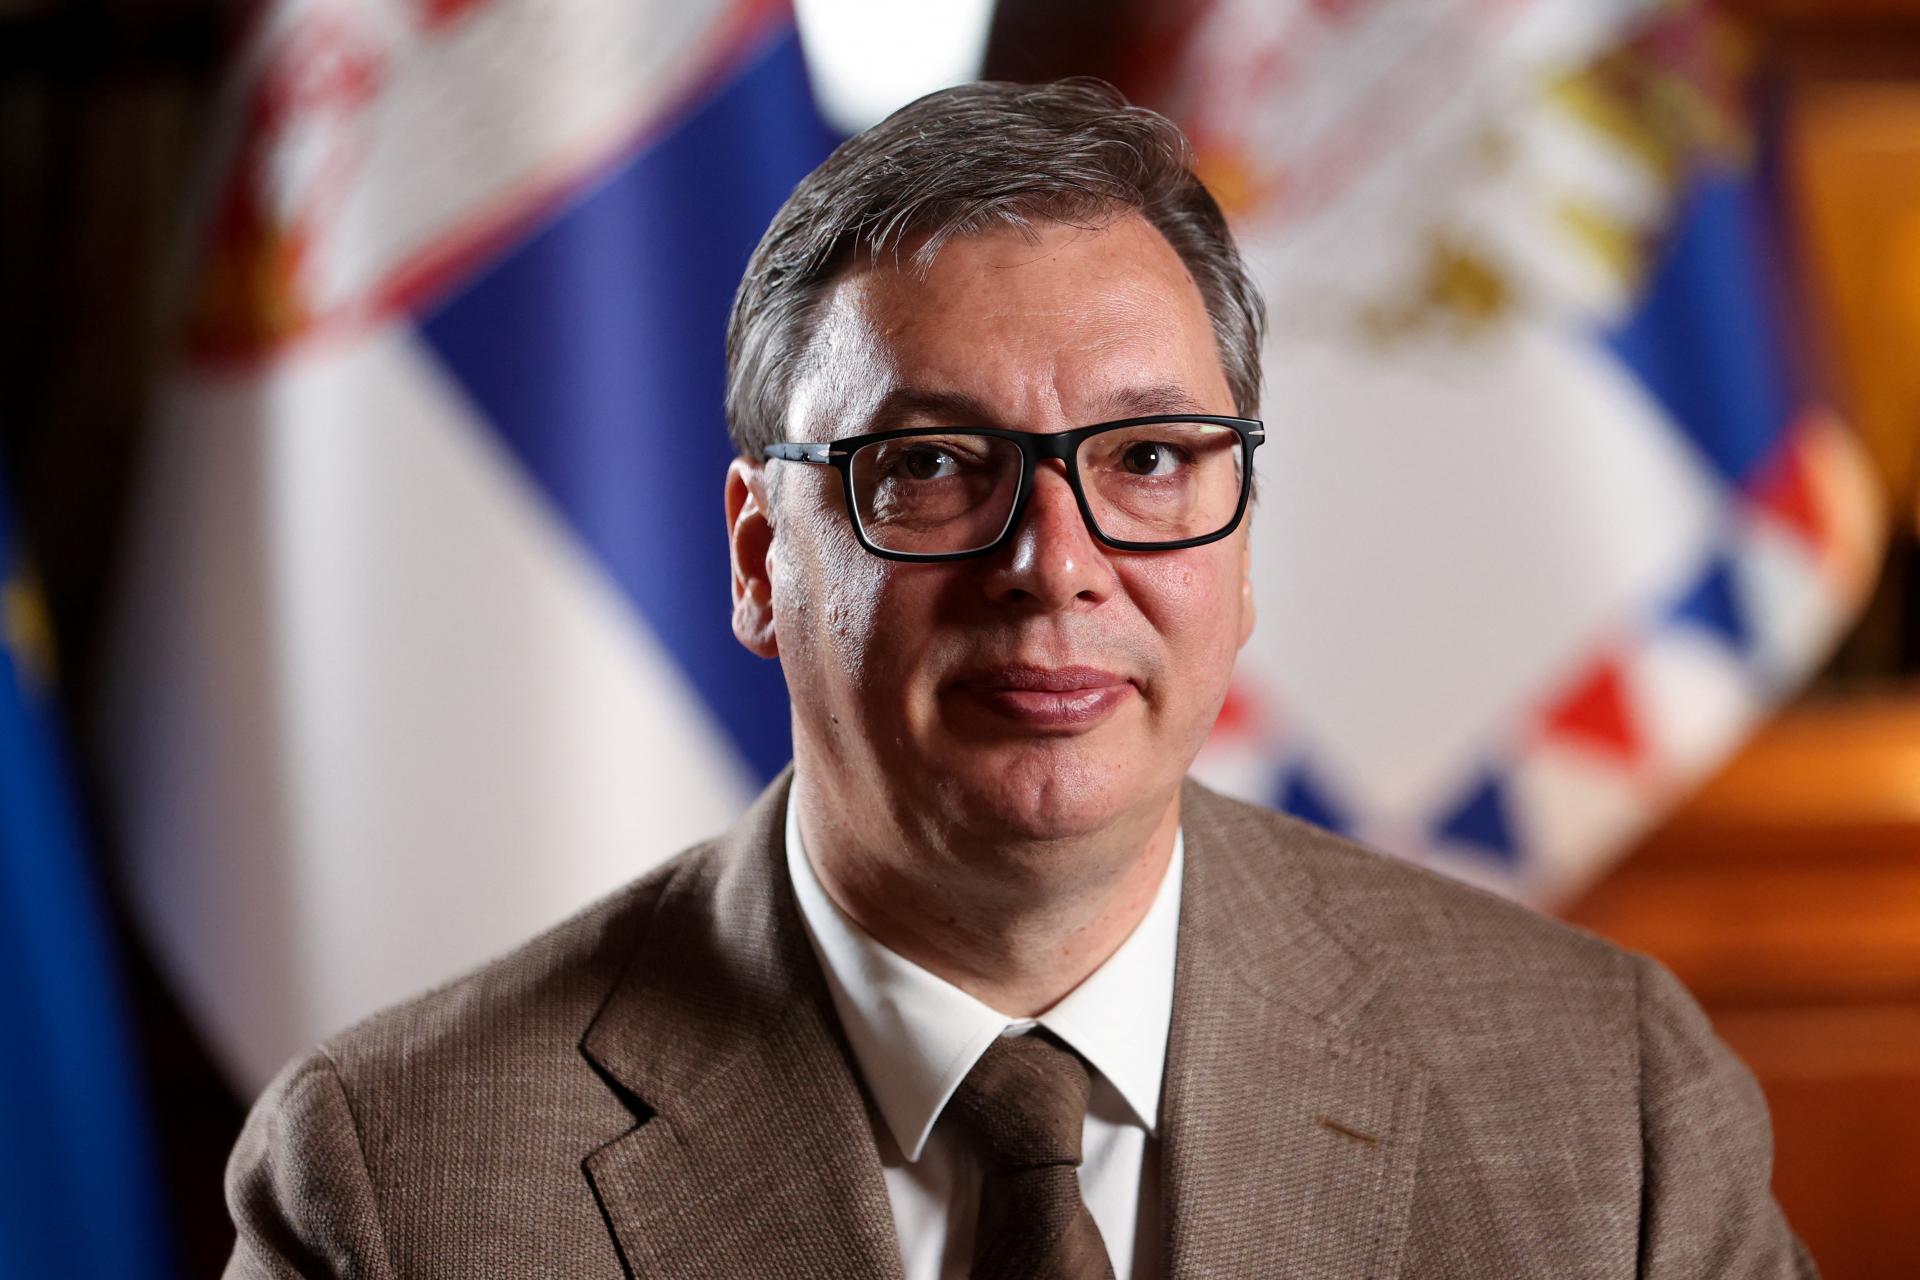 Vučić podmienil účasť Srbov v kosovských voľbách udelením autonómie. Priština musí ustúpiť, tvrdí